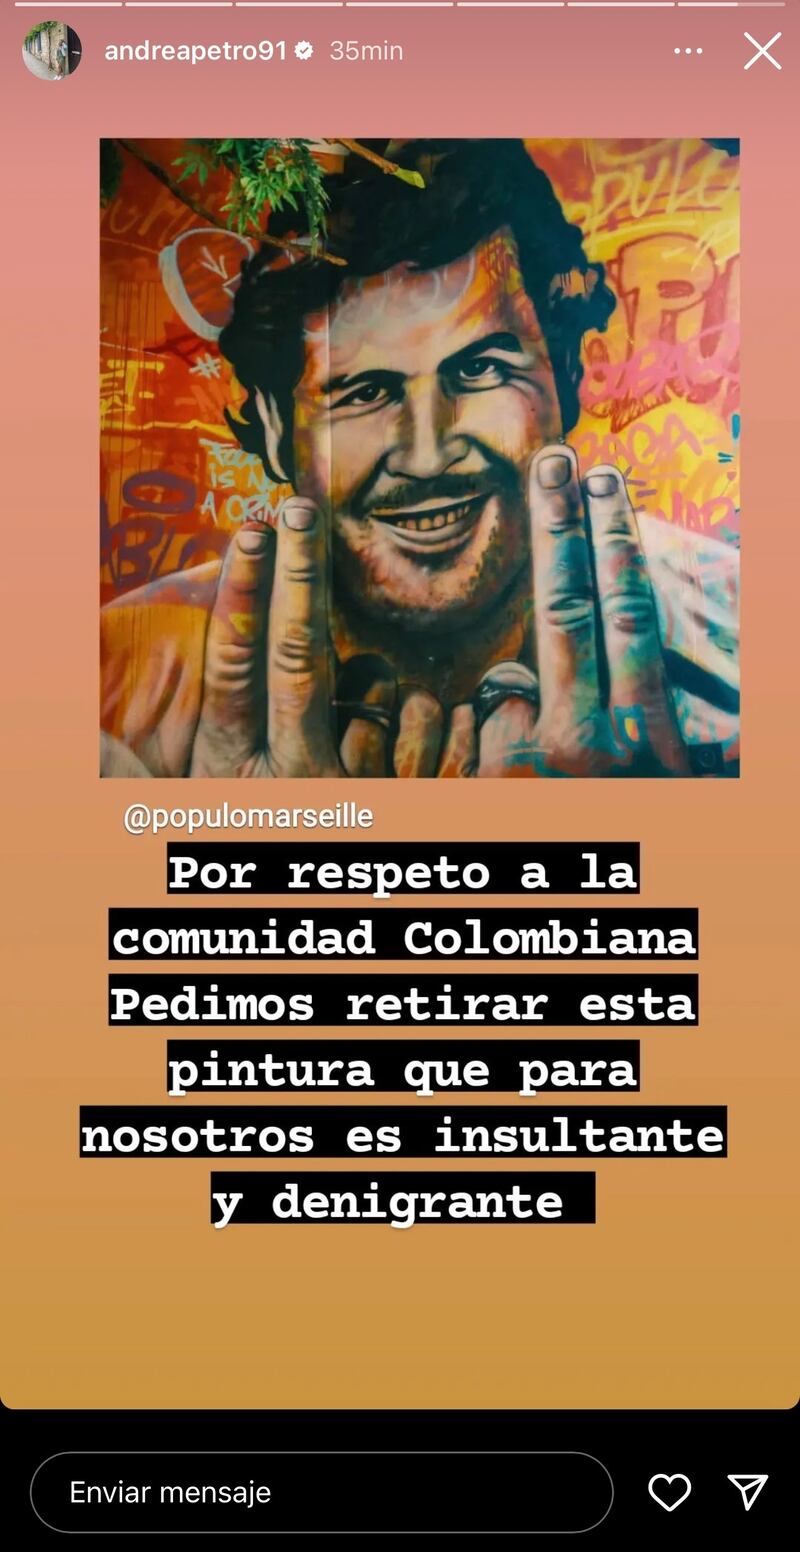 Andrea Petro mostró su molestia por pintura de Pablo Escobar